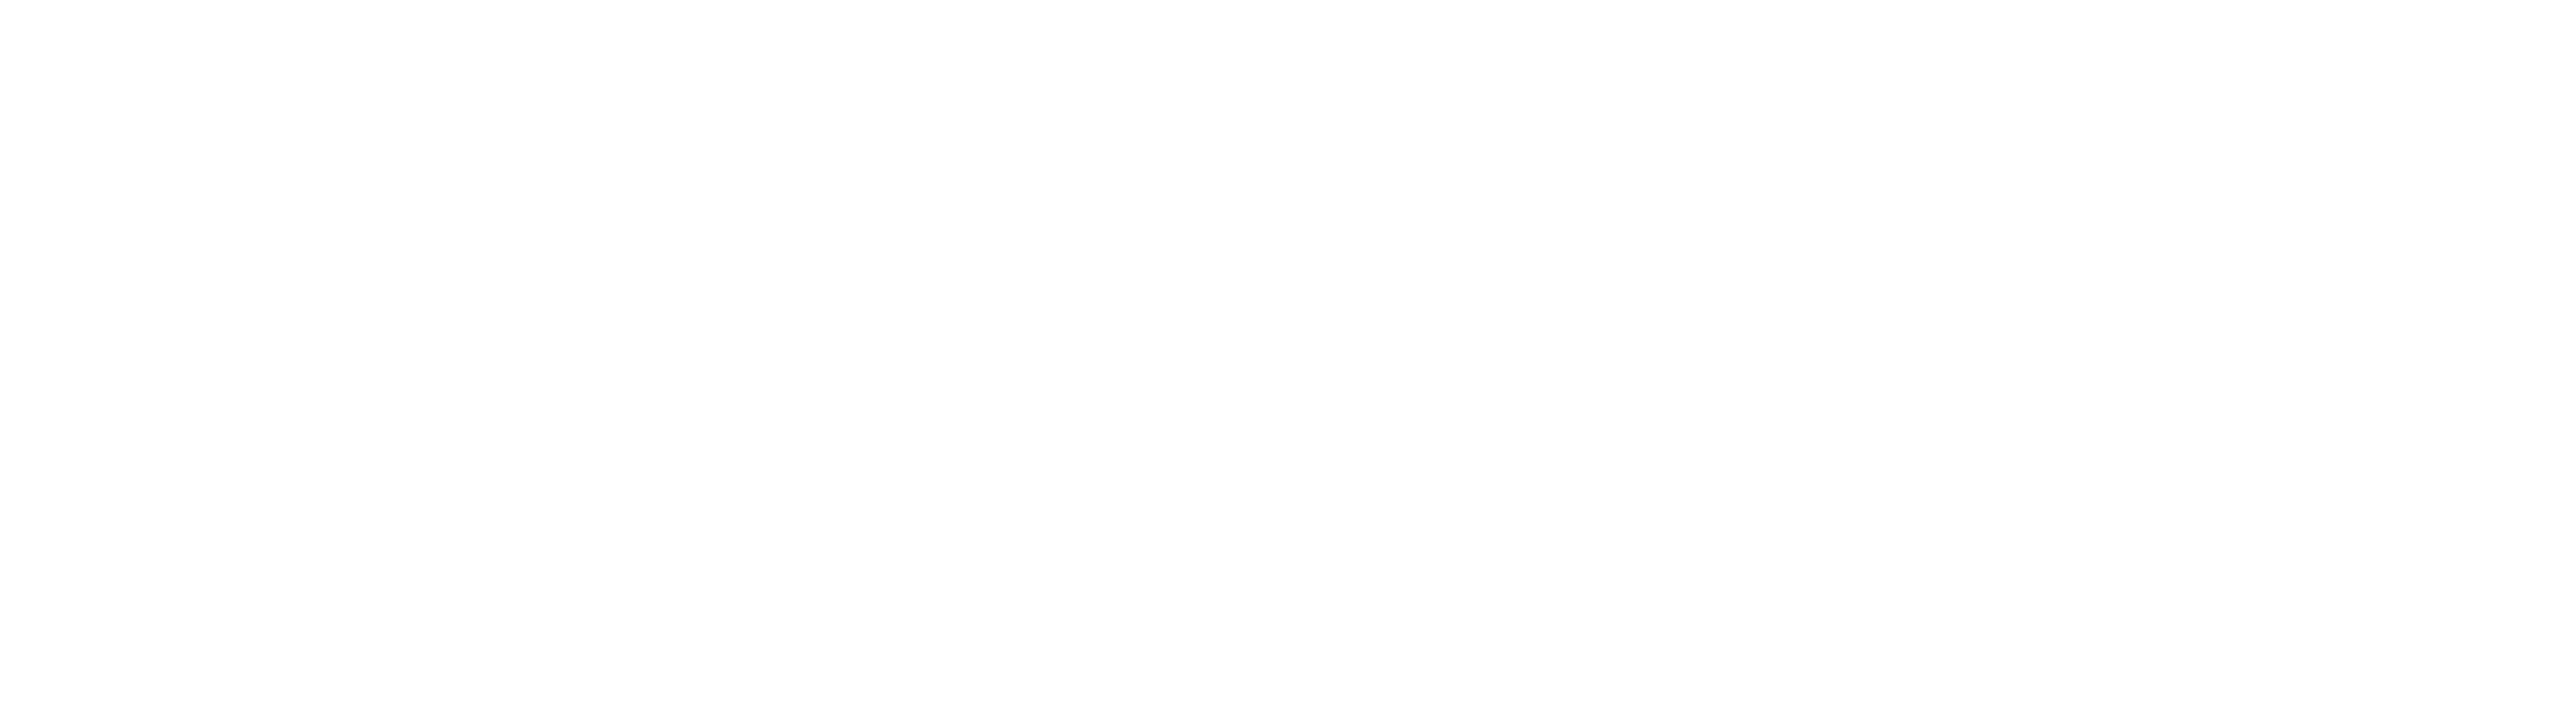 May Softech Logo White